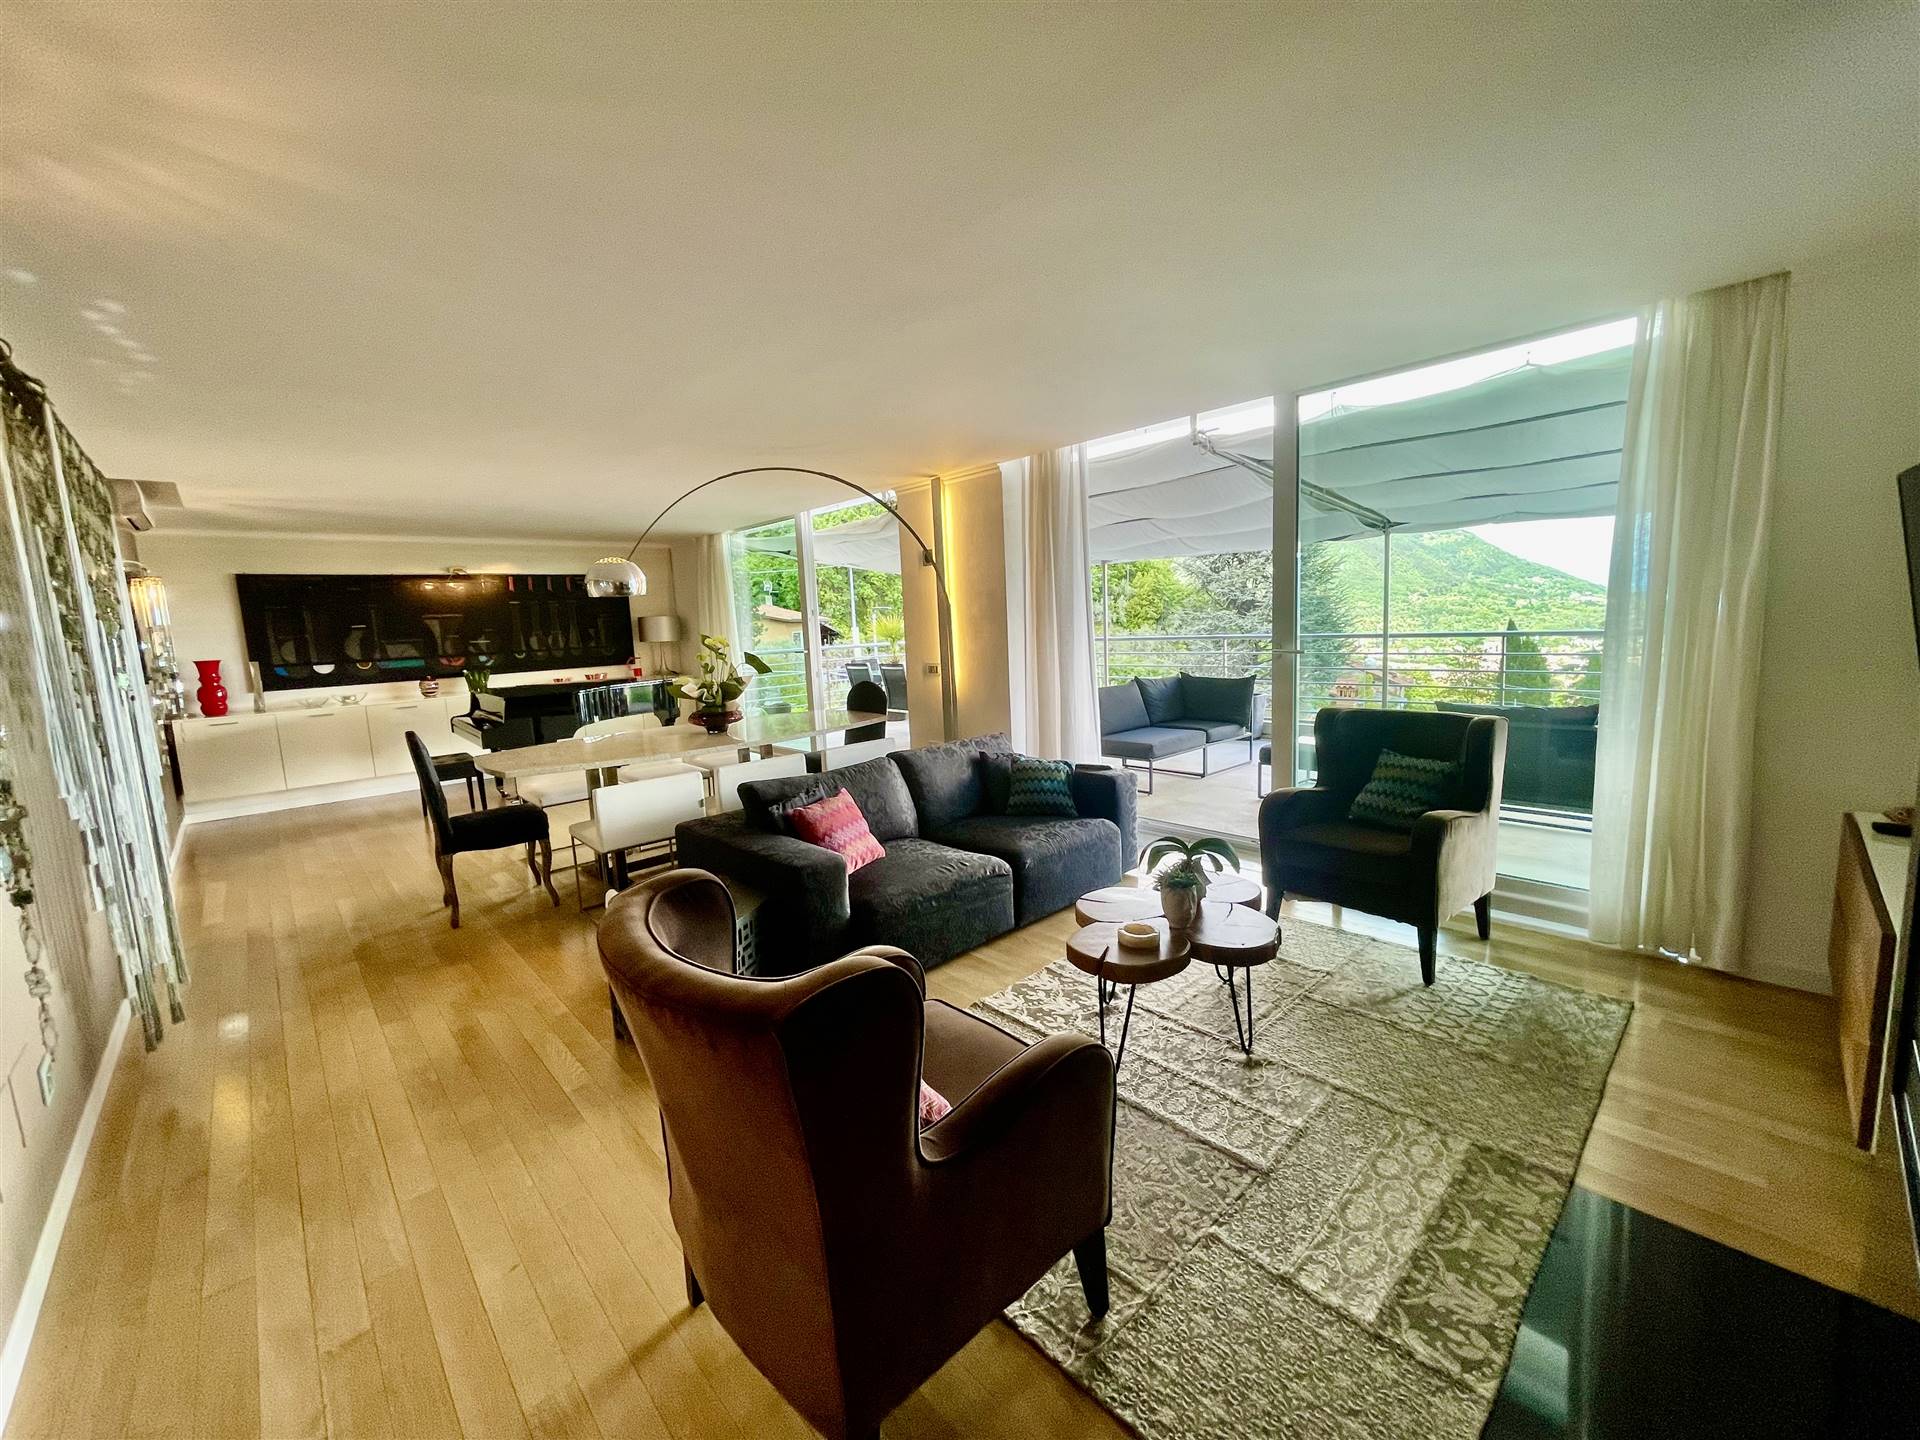 SALO', Villa zu verkaufen von 192 Qm, Beste ausstattung, Heizung Bodenheizung, Energie-klasse: A, am boden Land auf 3, zusammengestellt von: 5 Raume, 